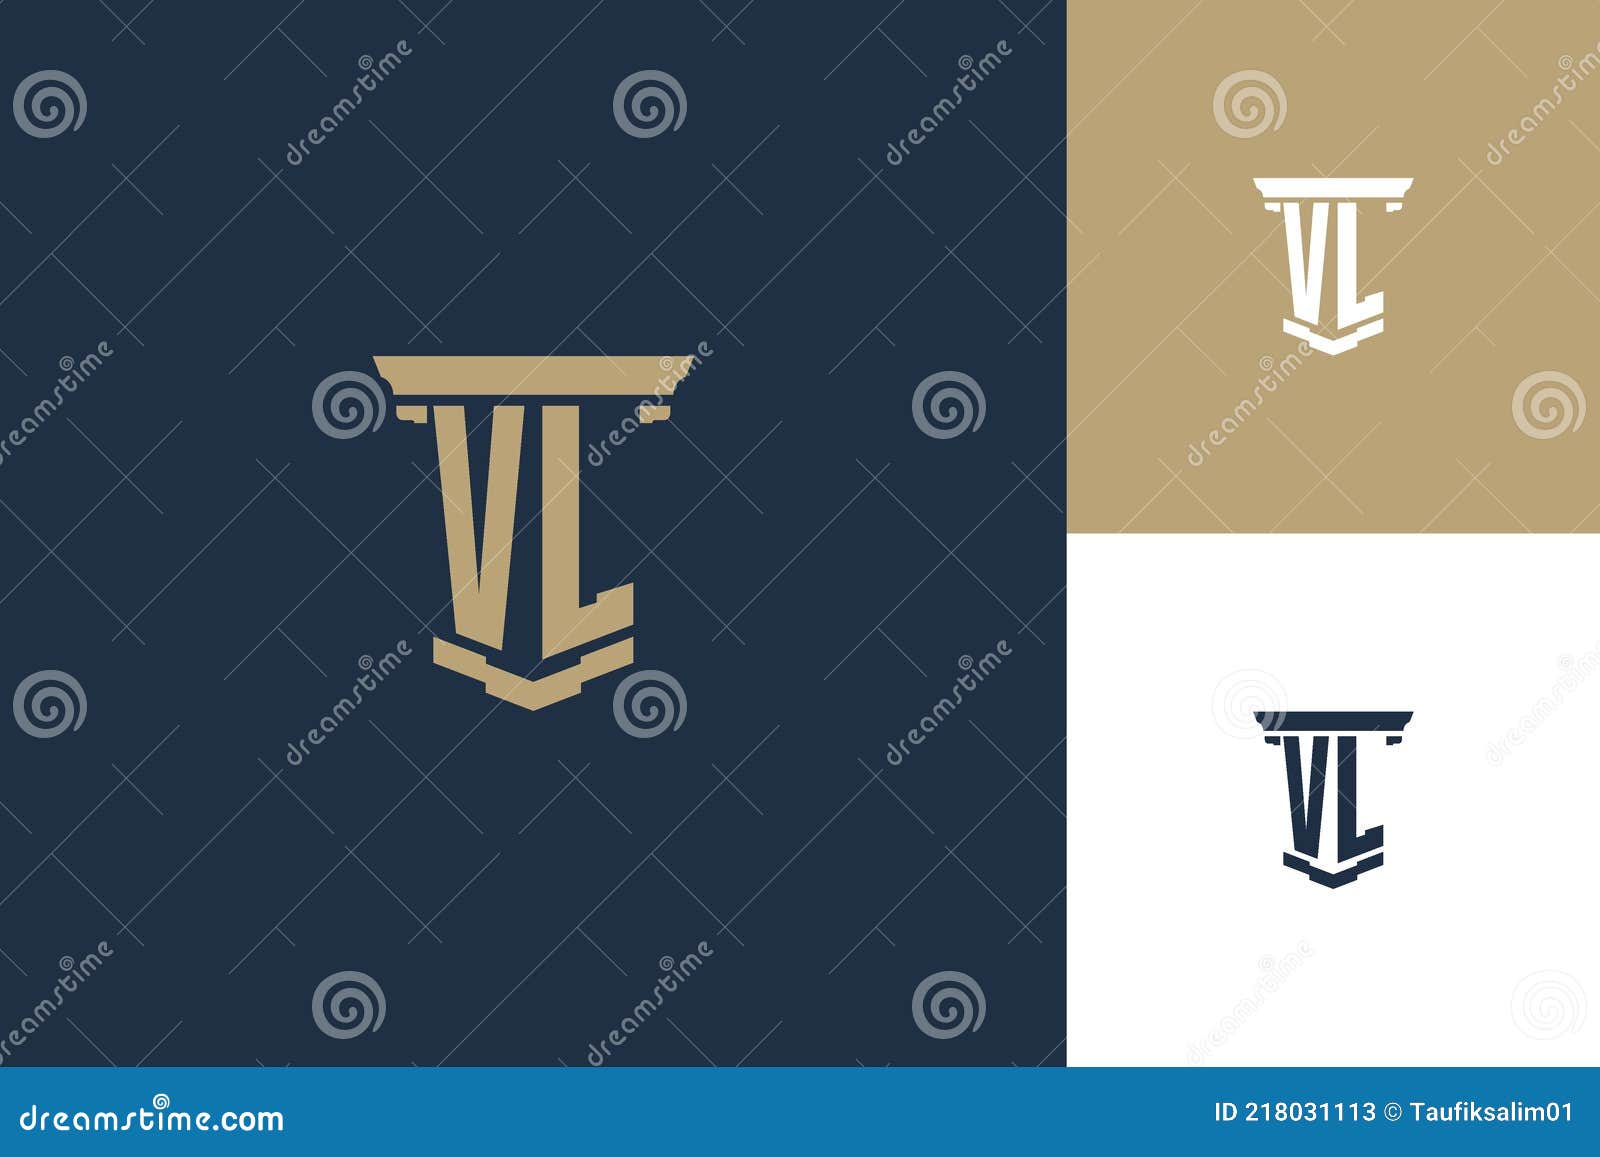 Premium Vector  Monogram vl logo design template free